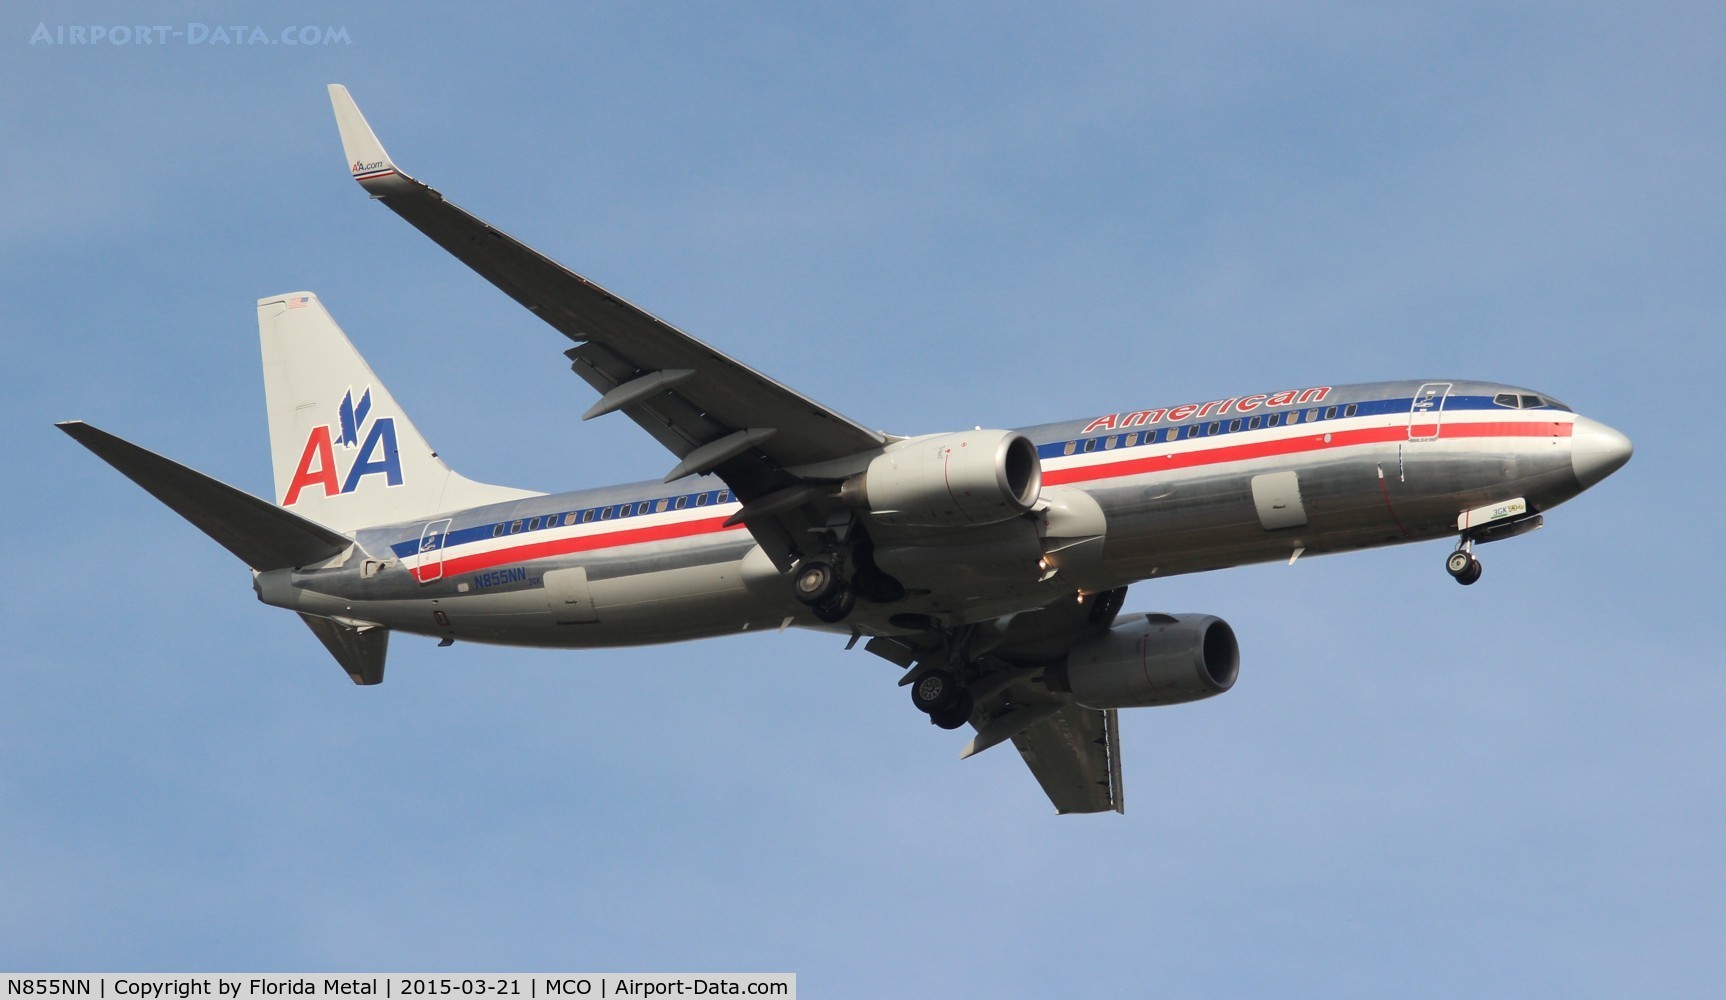 N855NN, 2010 Boeing 737-823 C/N 40582, American